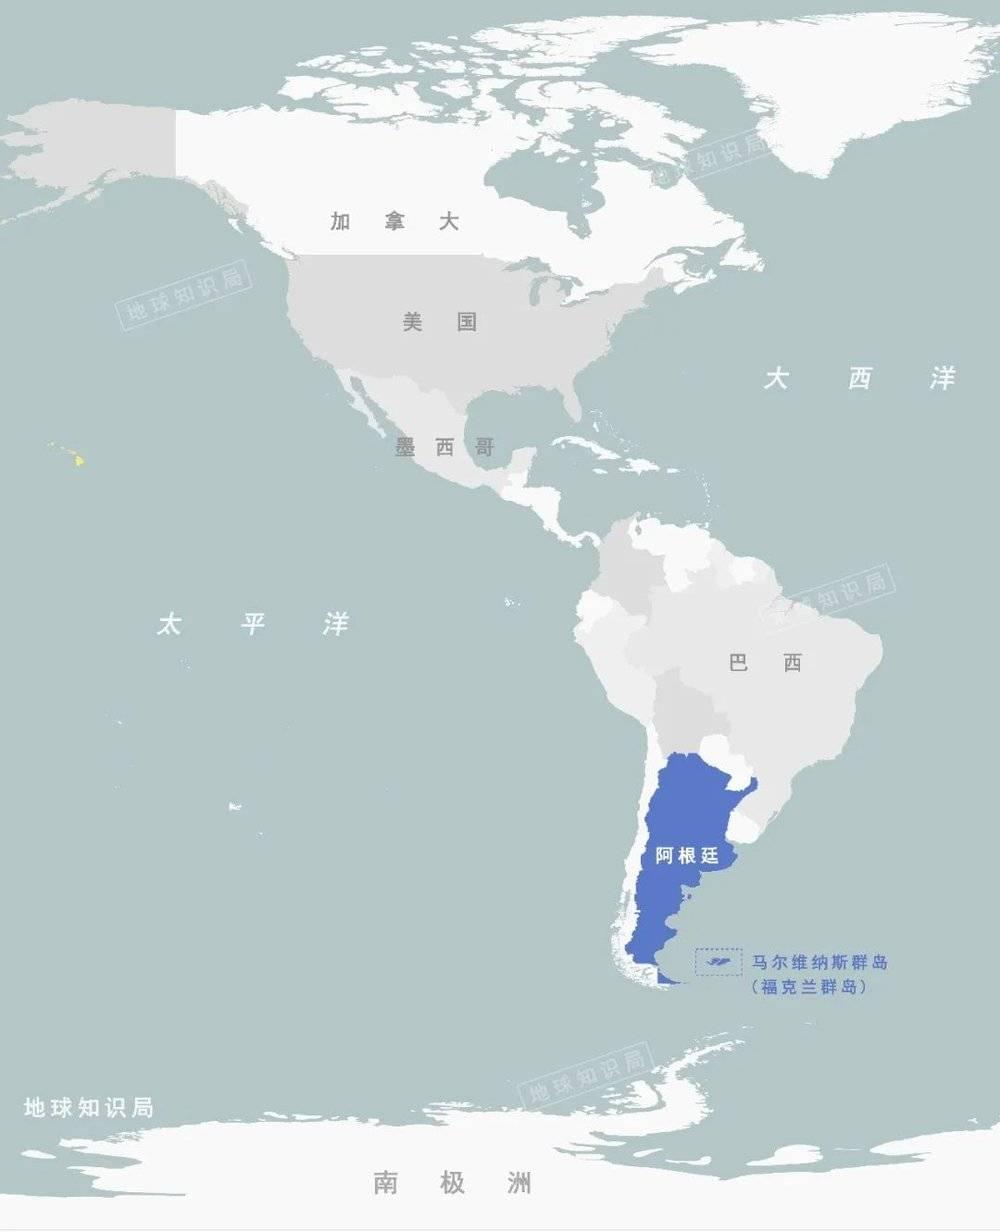 阿根廷与马尔维纳斯群岛（福克兰群岛）